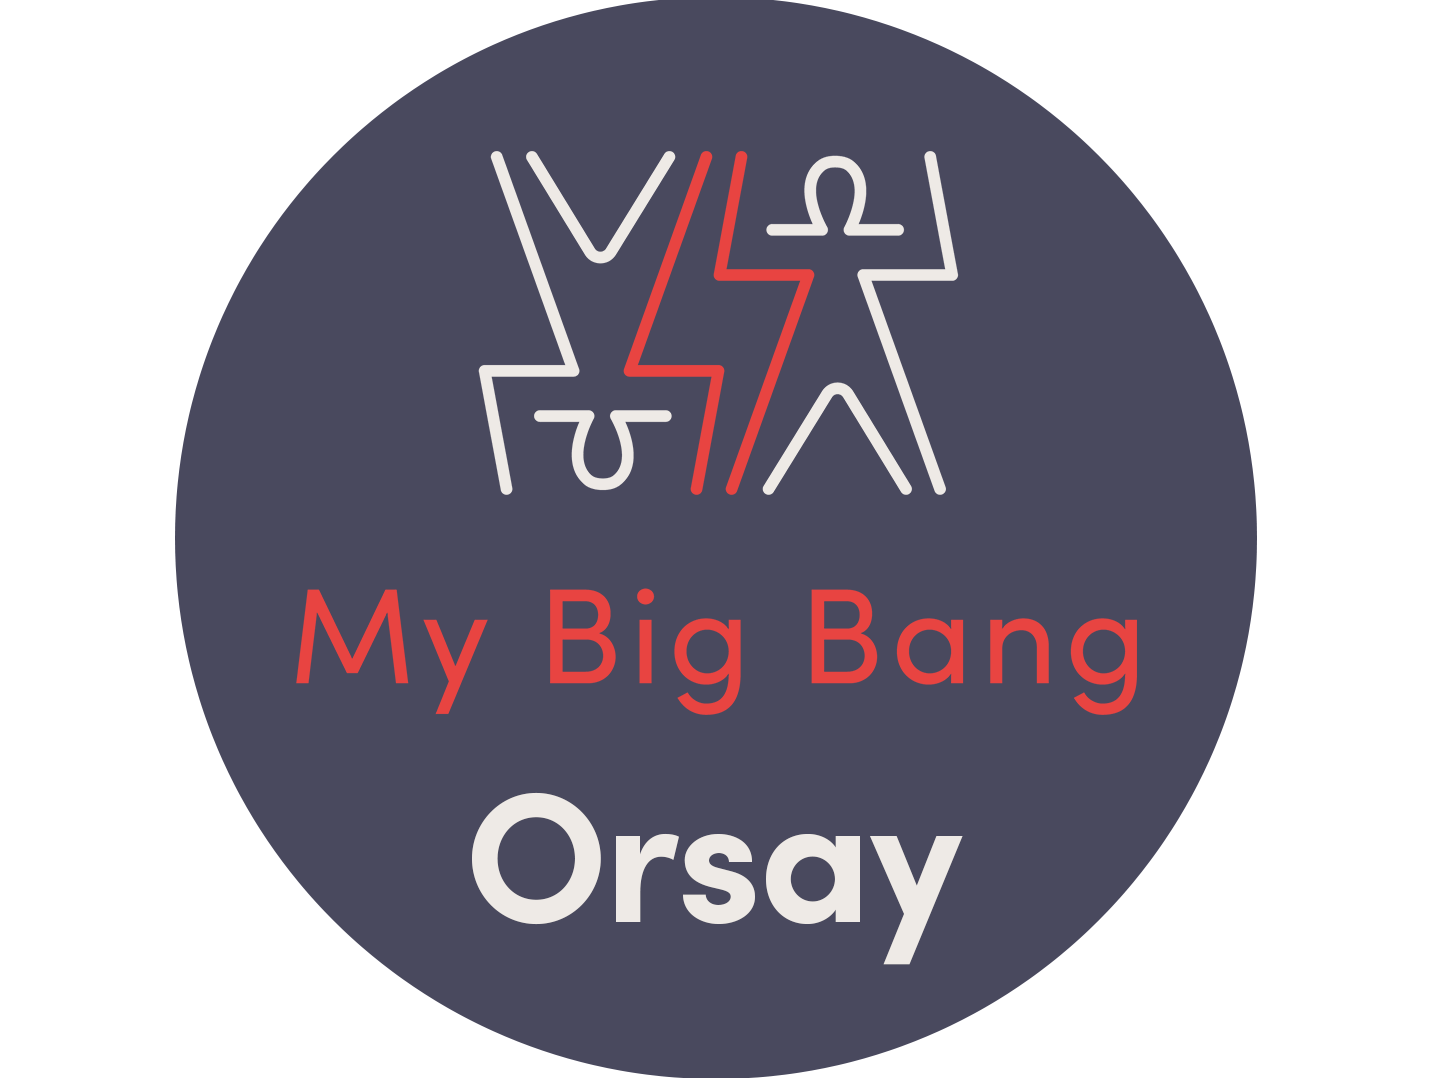 My Big Bang Orsay